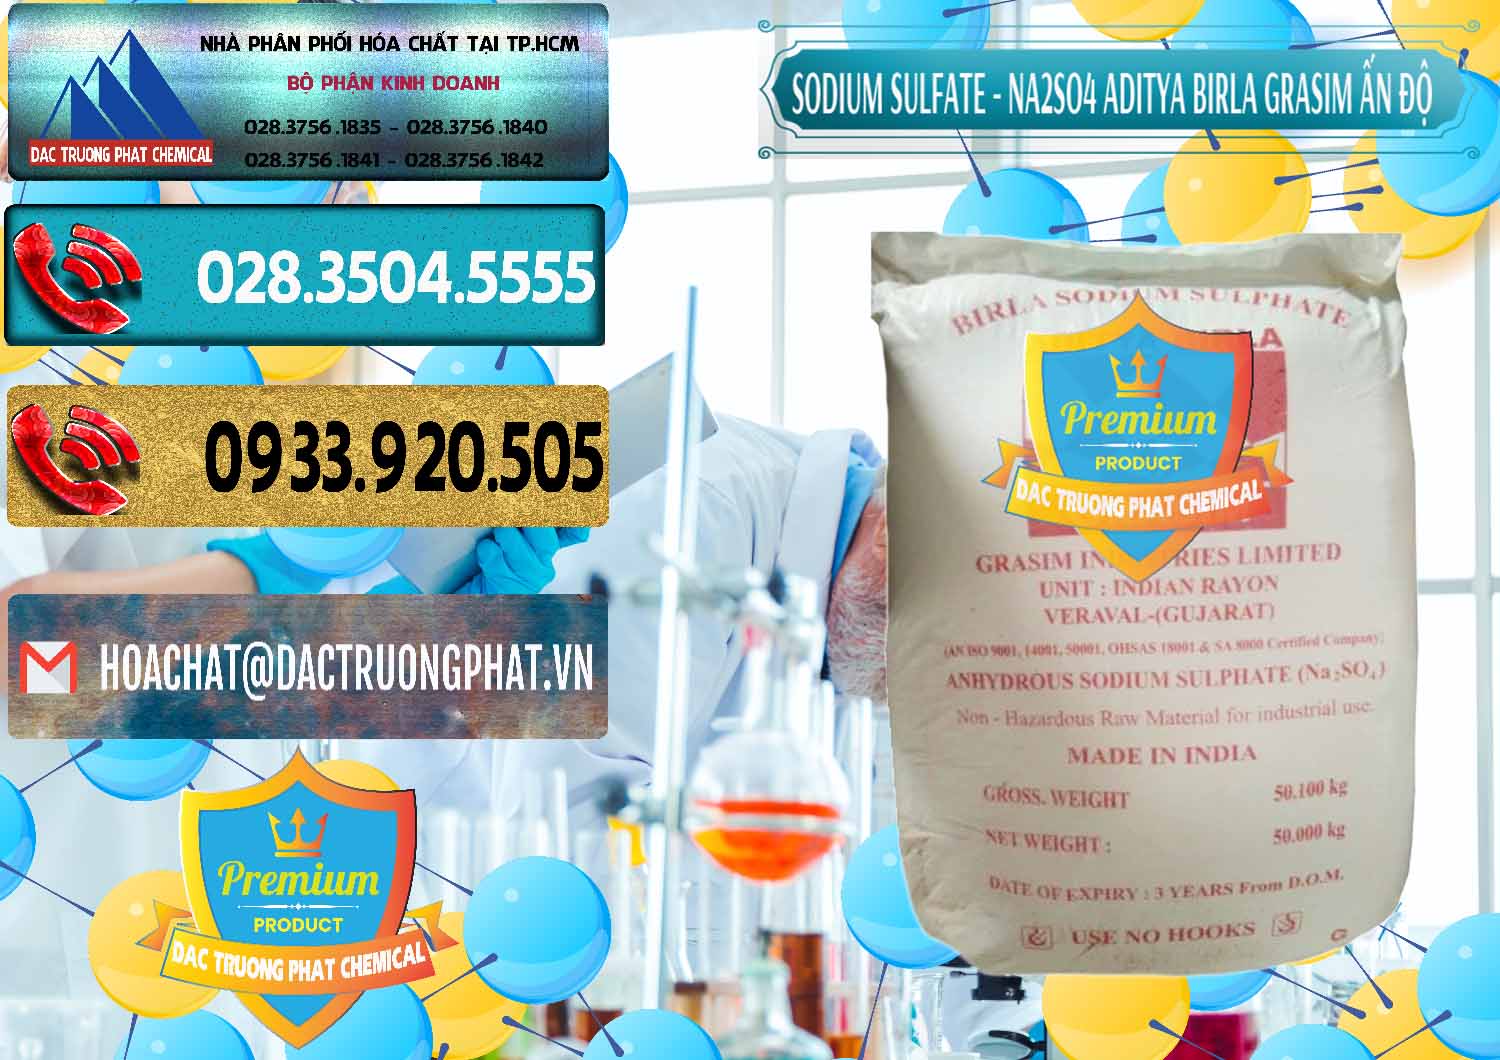 Công ty nhập khẩu _ bán Sodium Sulphate - Muối Sunfat Na2SO4 Grasim Ấn Độ India - 0356 - Nơi chuyên cung cấp - bán hóa chất tại TP.HCM - hoachatdetnhuom.com